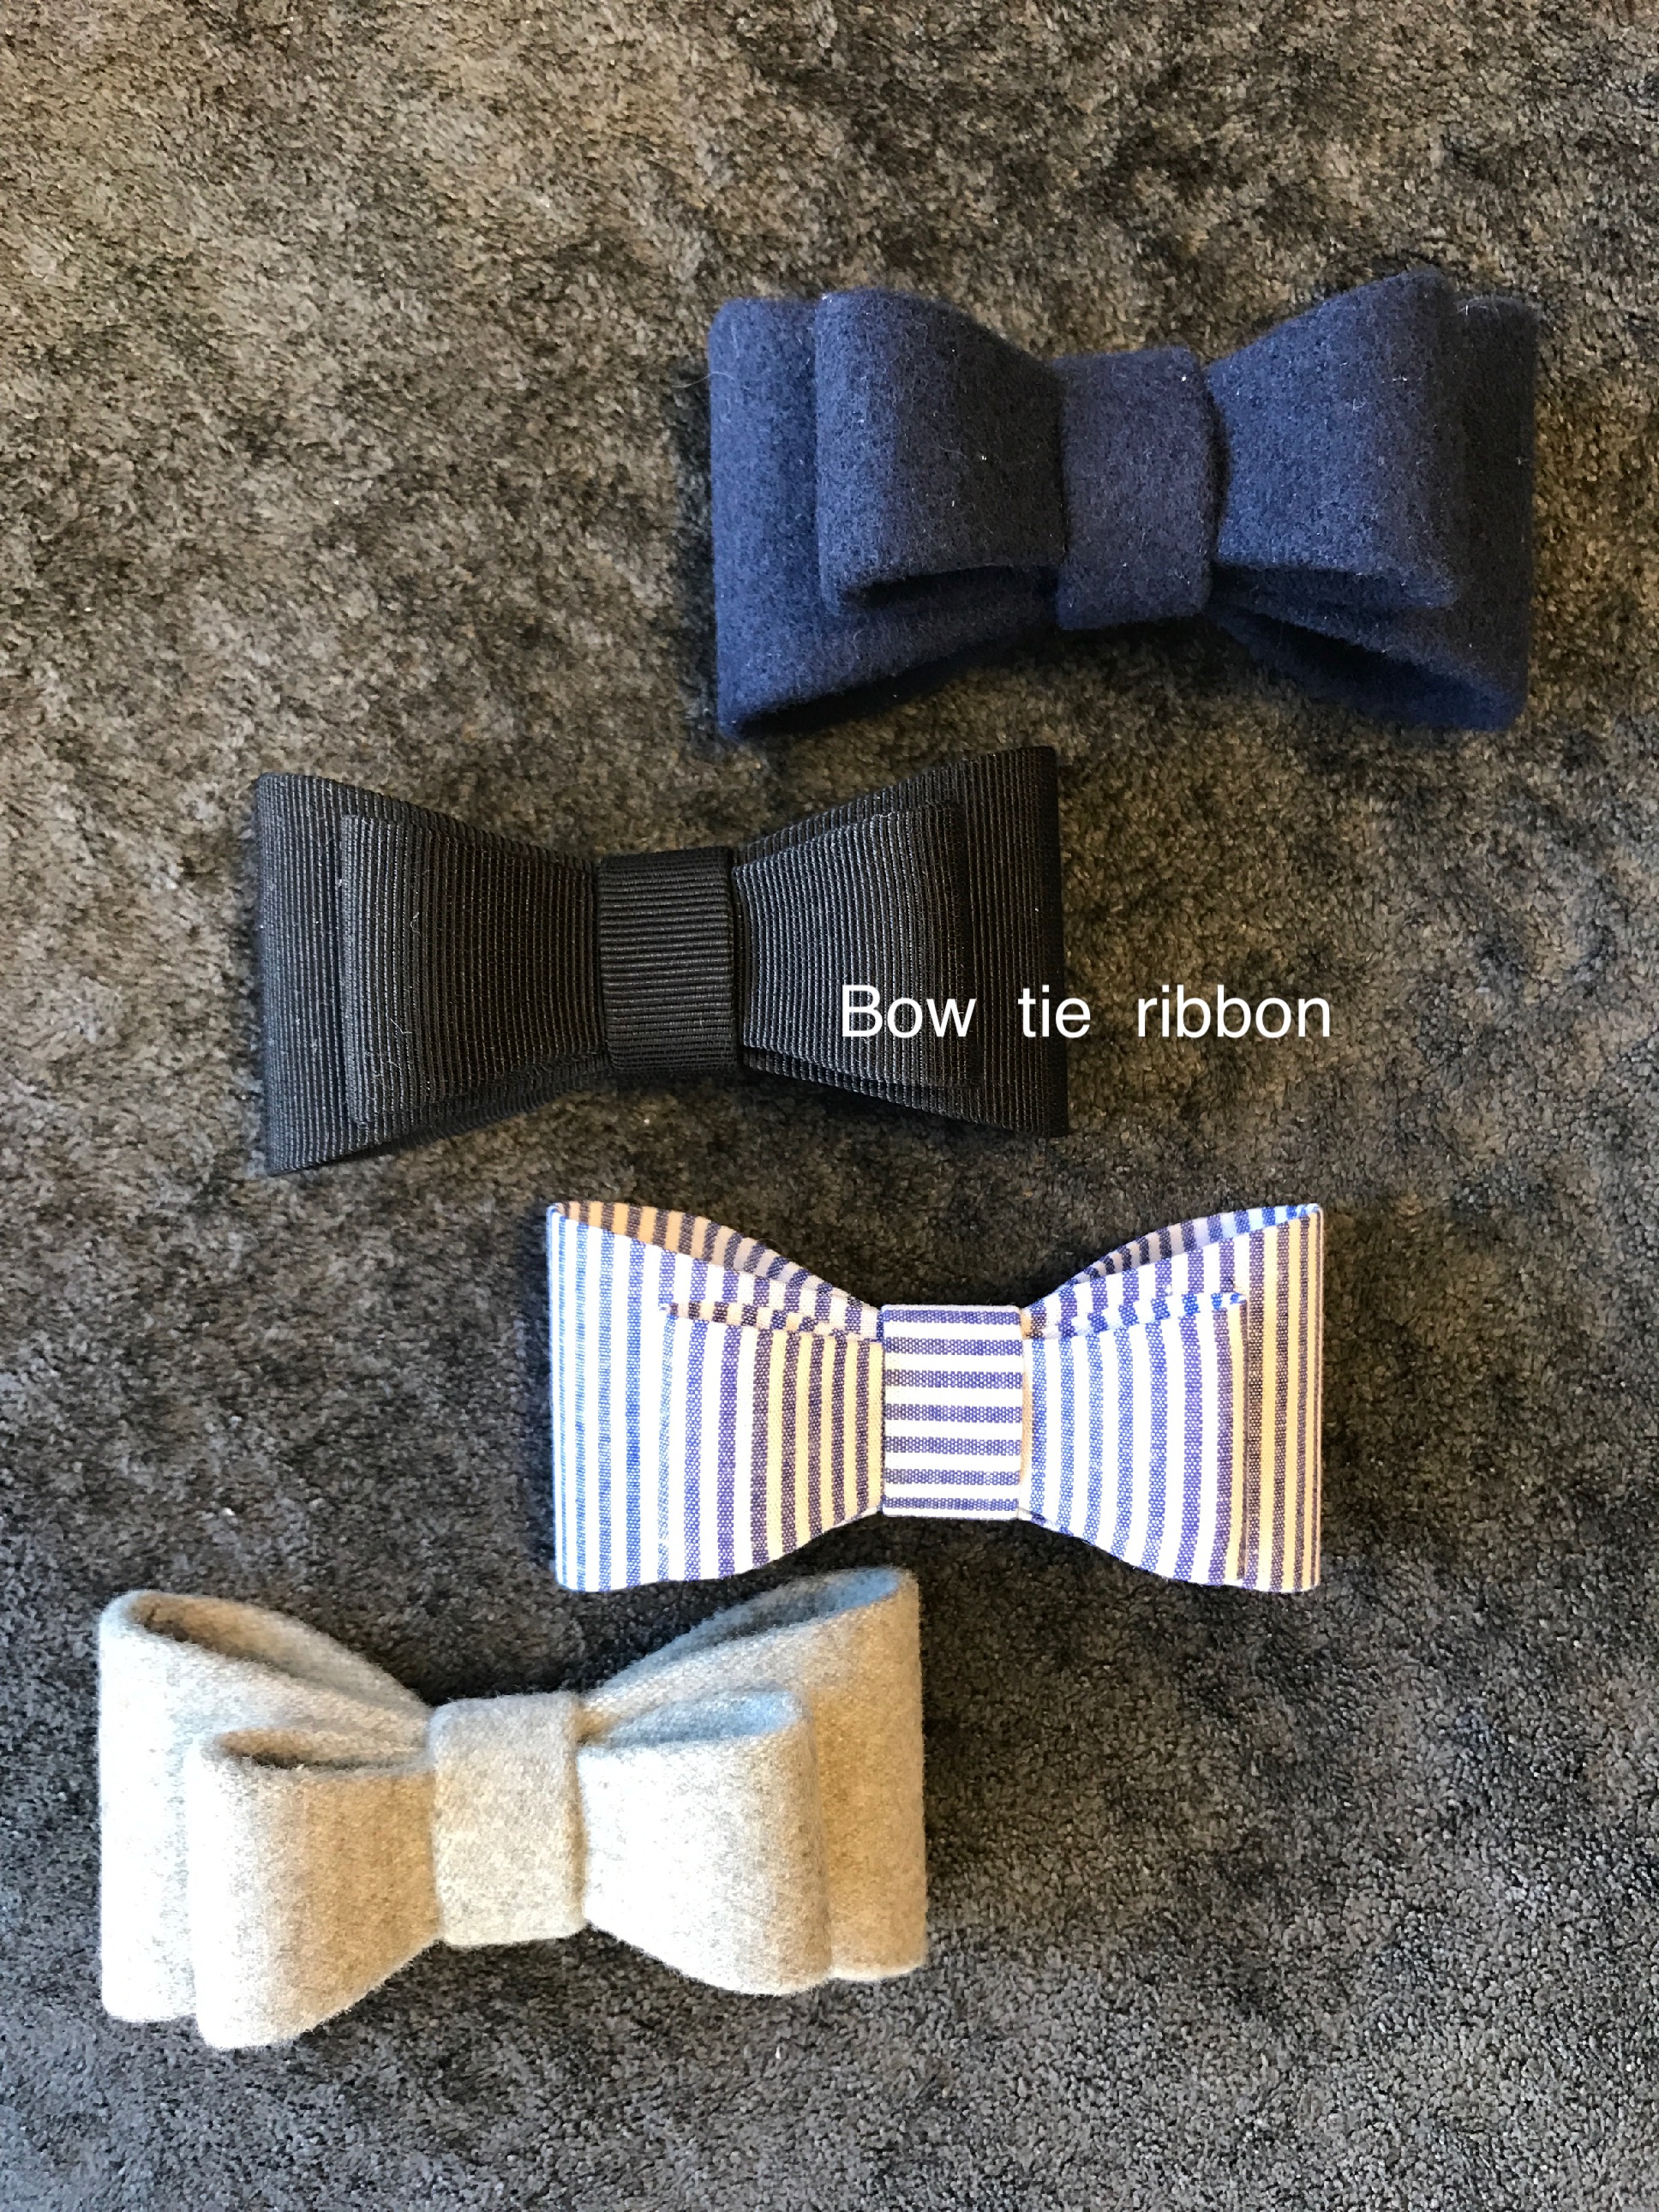 Bow Tie Ribbon 入荷のお知らせ